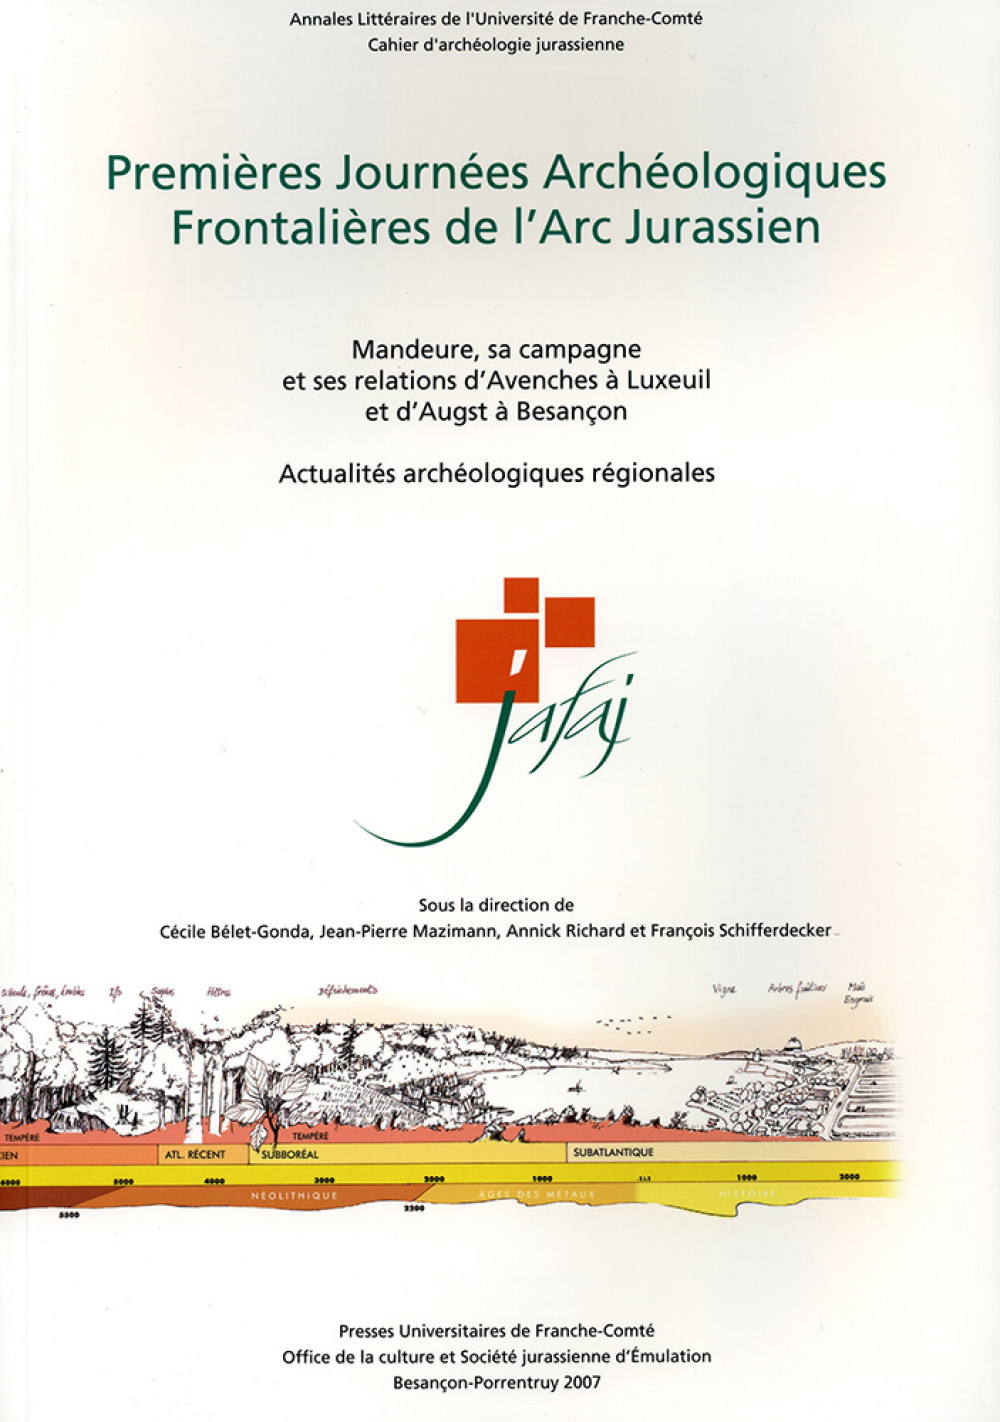 Premières Journées Archéologiques Frontalières de l'Arc Jurassien